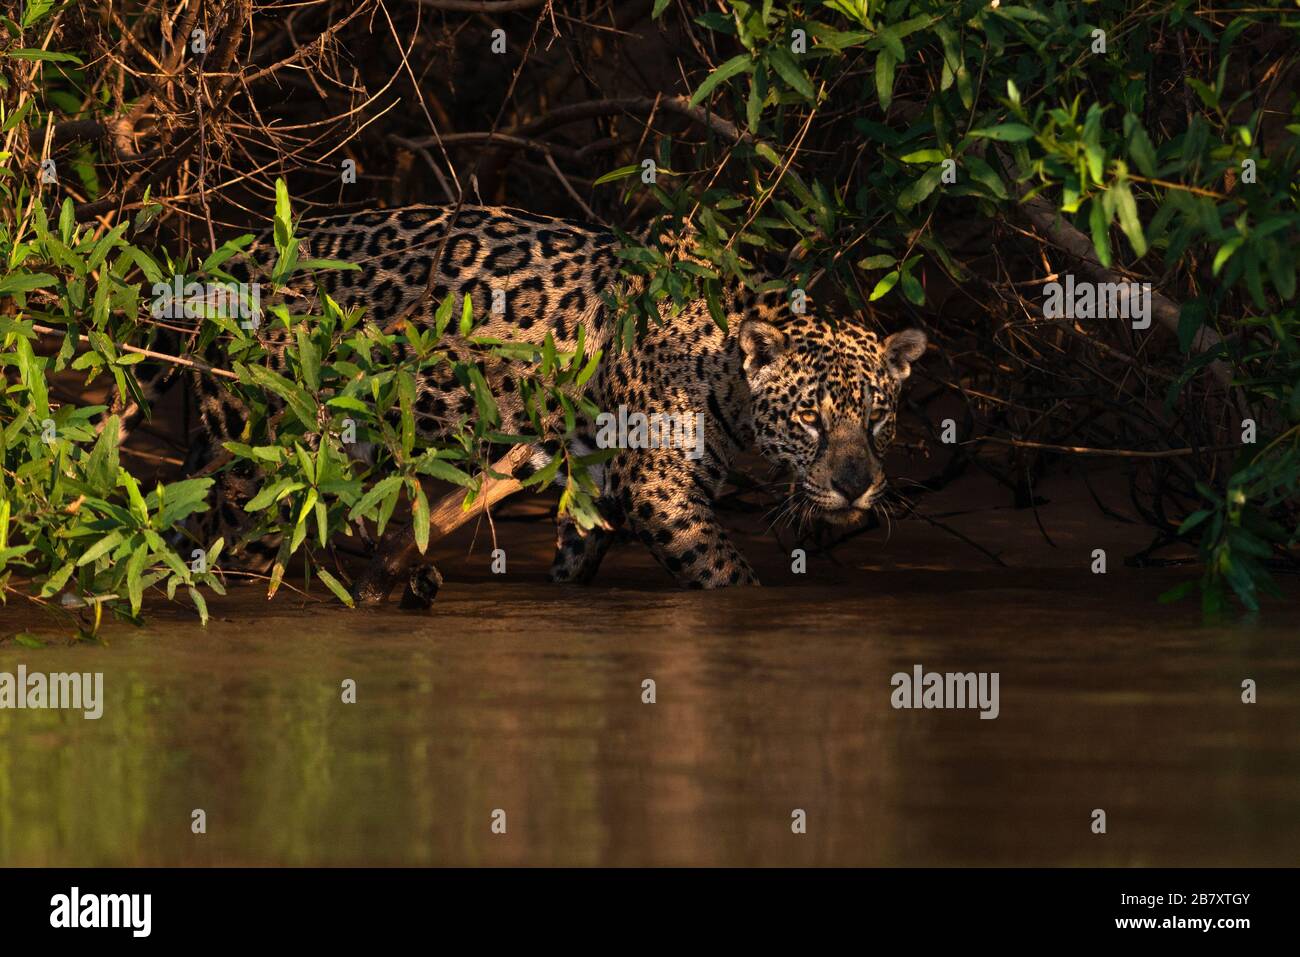 Una Jaguar (Panthera onca) emerge dalla vegetazione, Pantanal, Brasile. Foto Stock